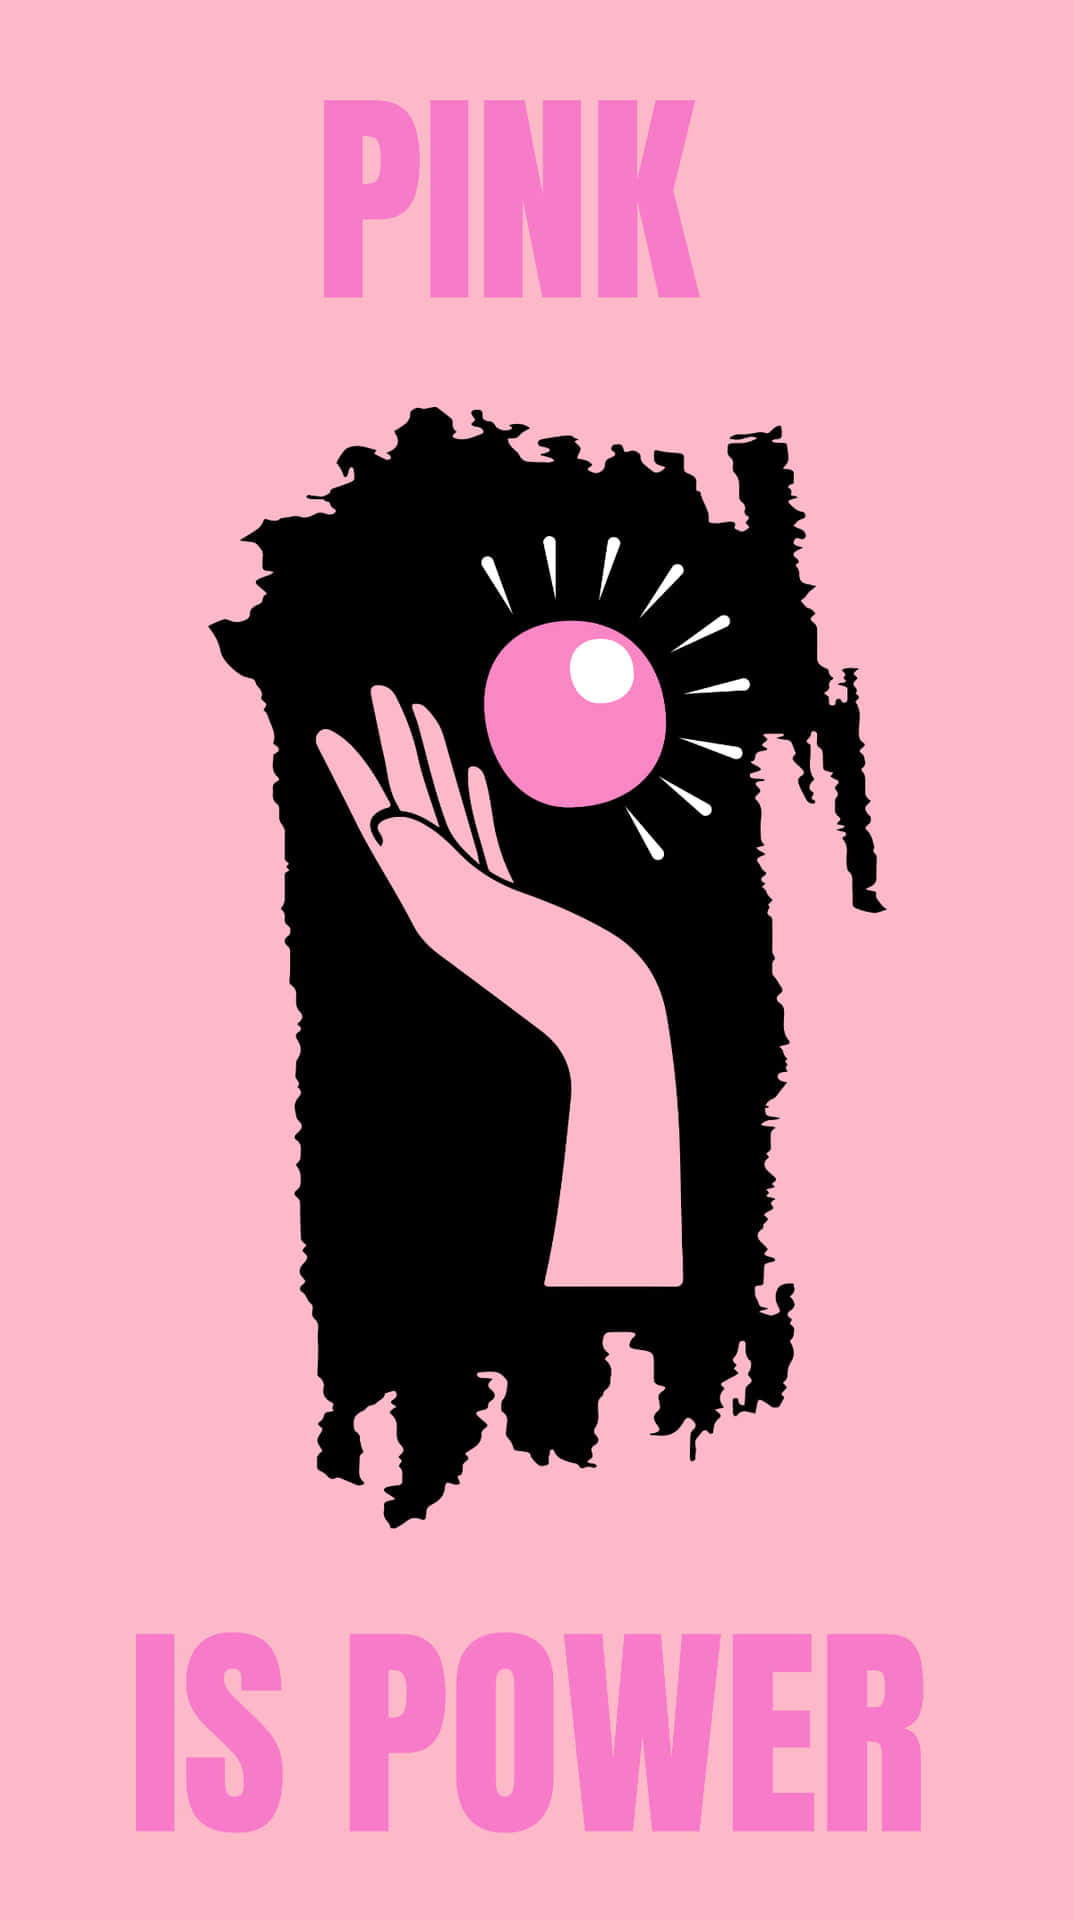 Pink Power Feminist Poster Wallpaper